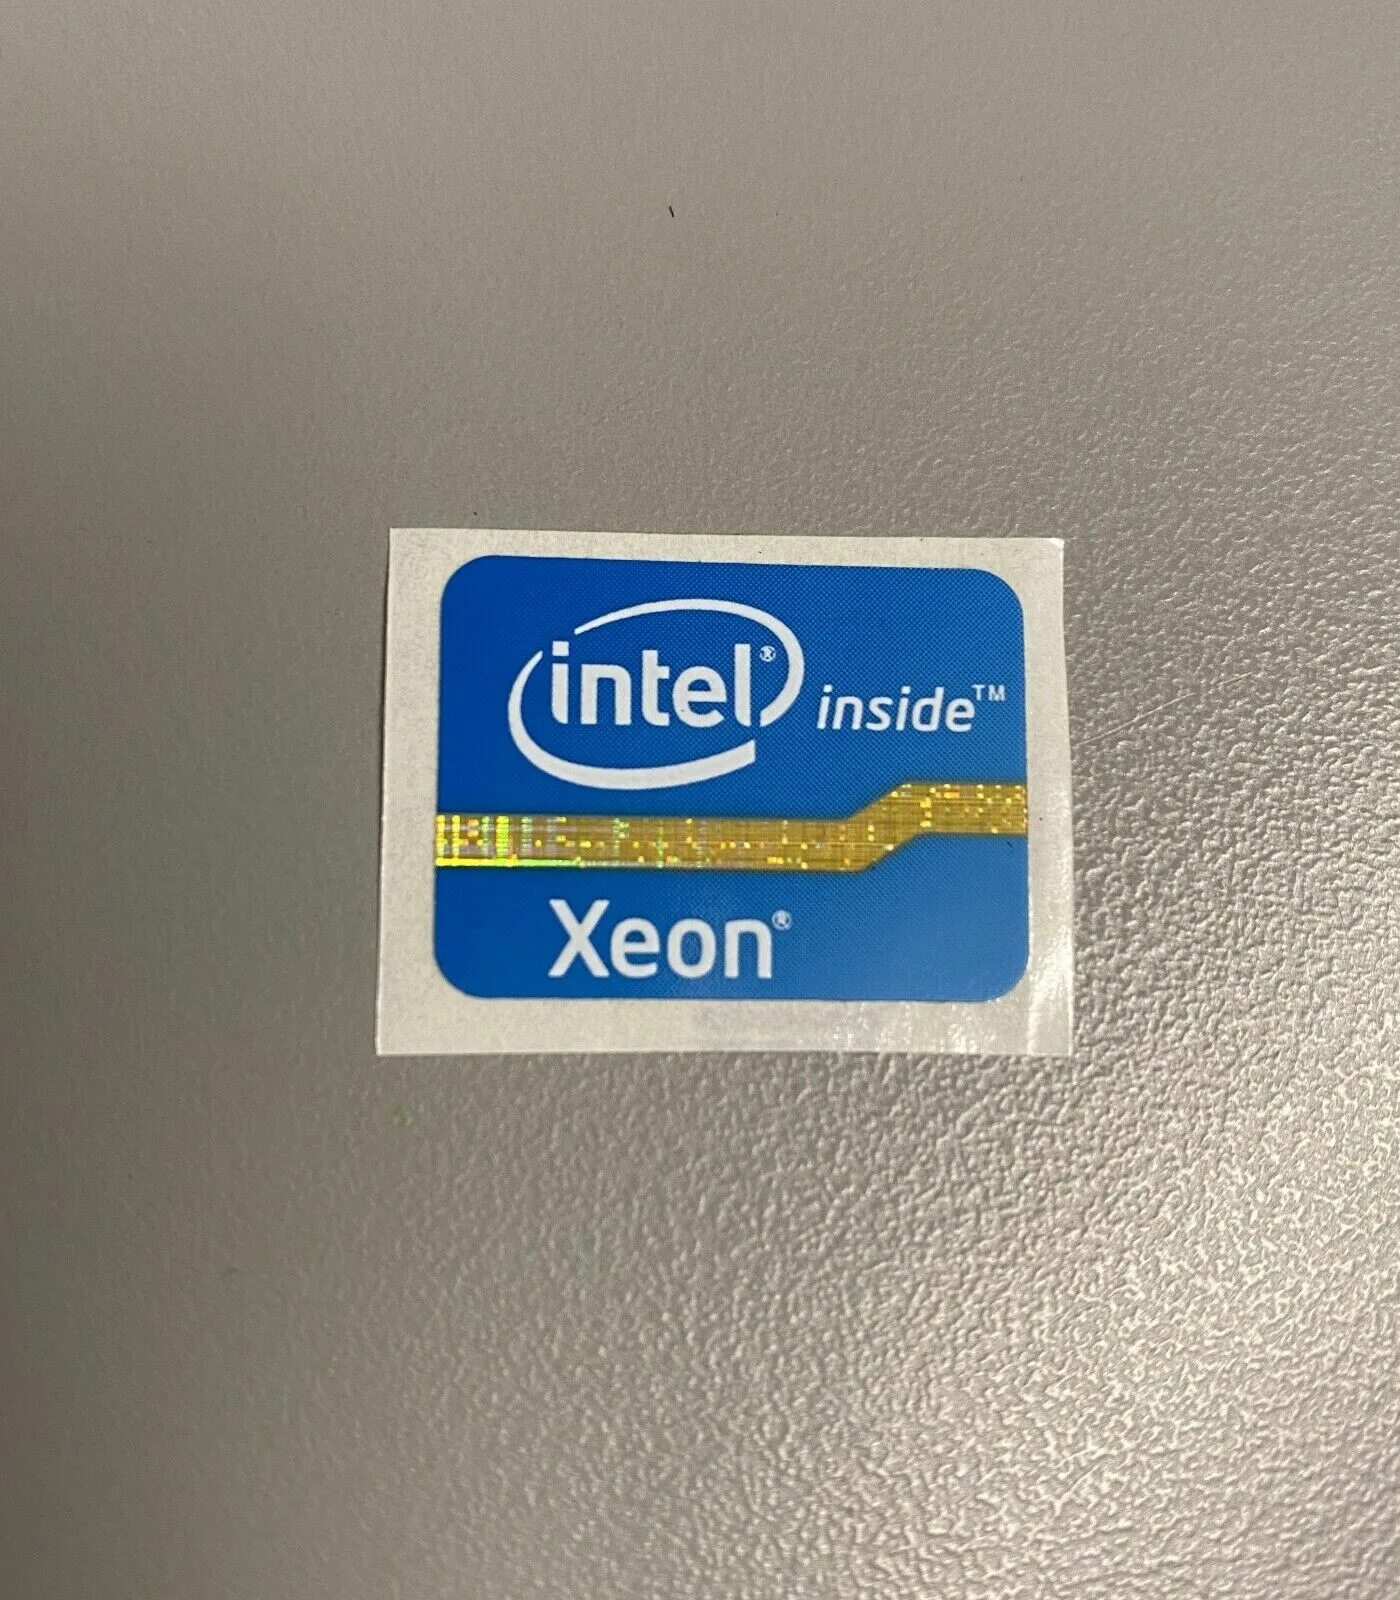 Intel Pentium 3 Xeon inside наклейка. Intel Xeon наклейка. Intel Xeon inside inside наклейка. Наклейка Интел ксеон. Наклейки intel